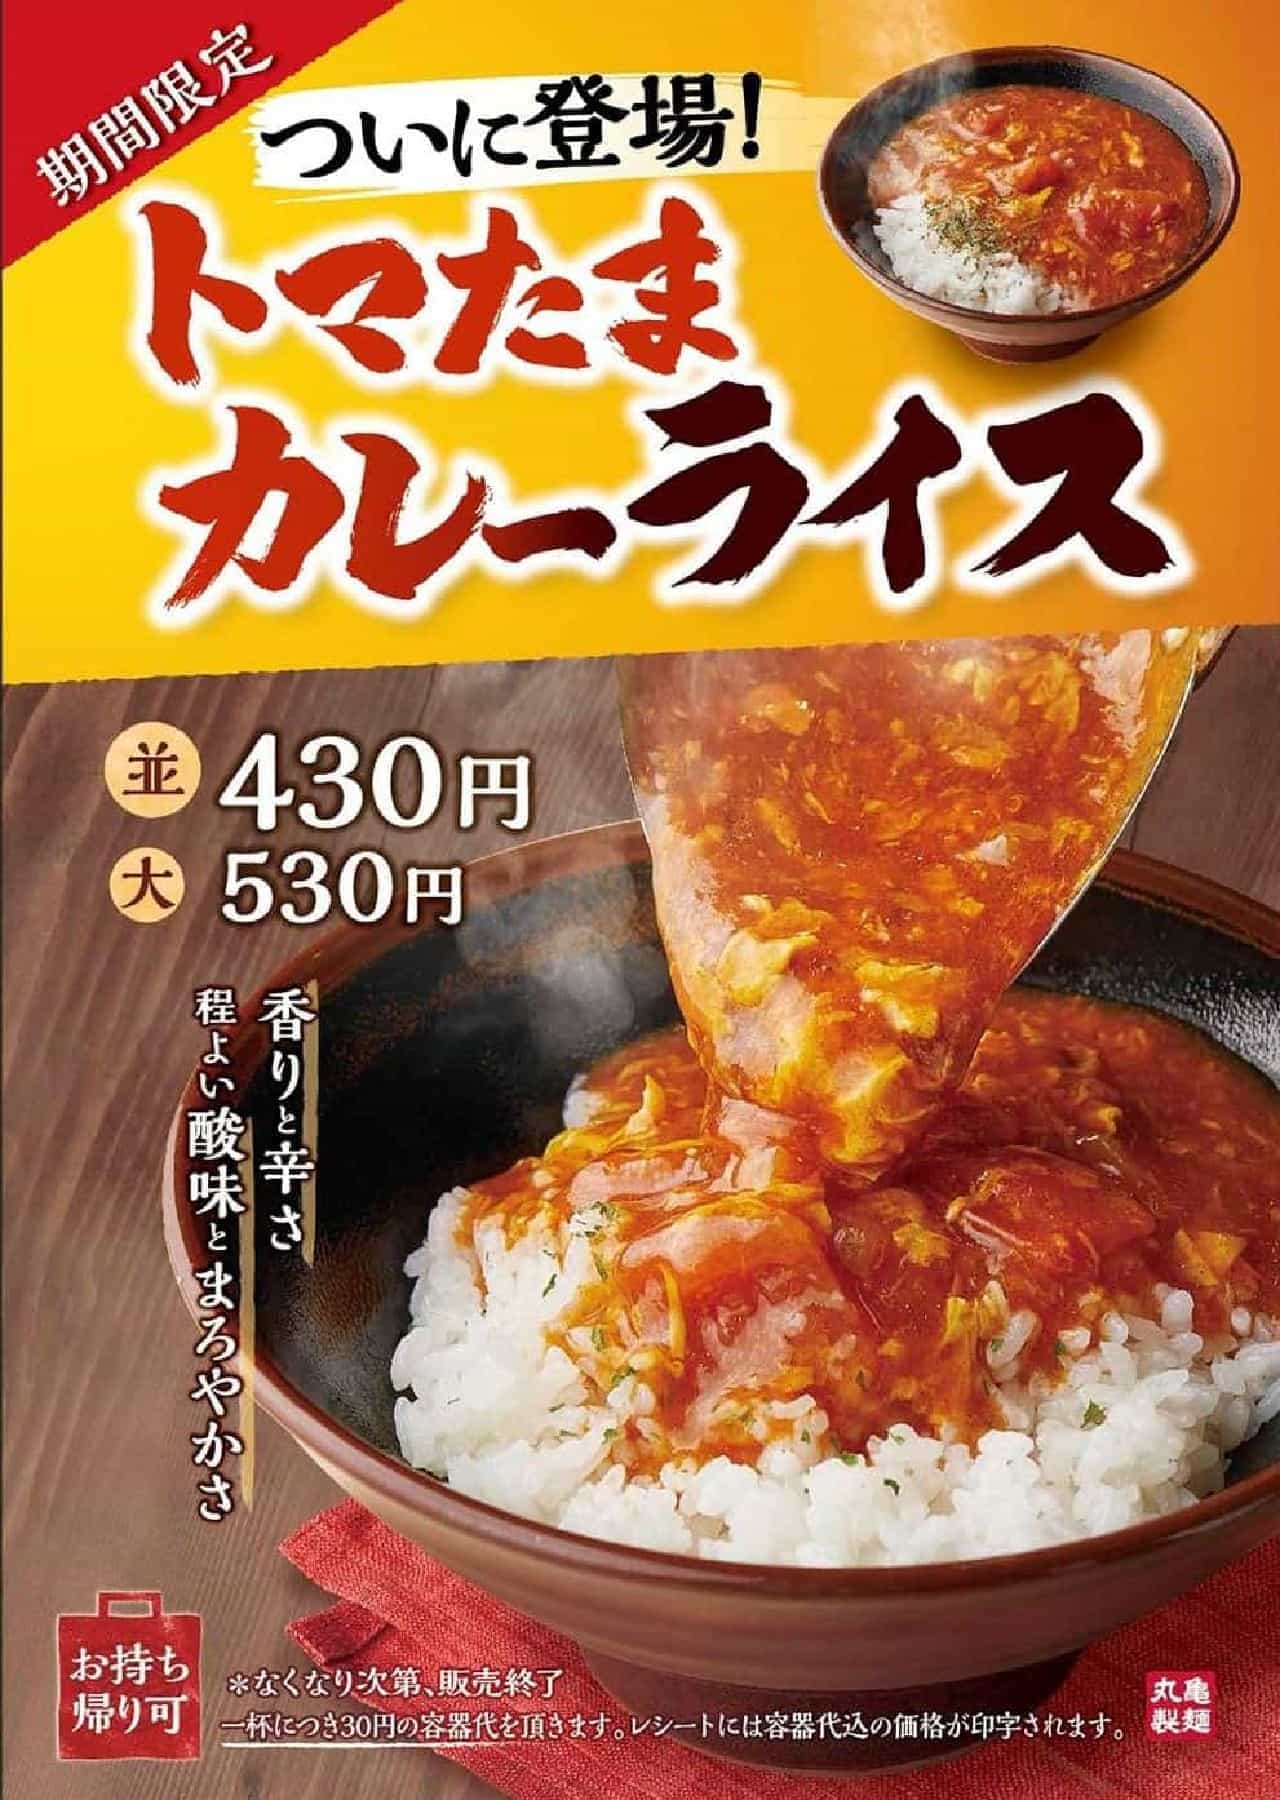 丸亀製麺「トマたまカレーライス」